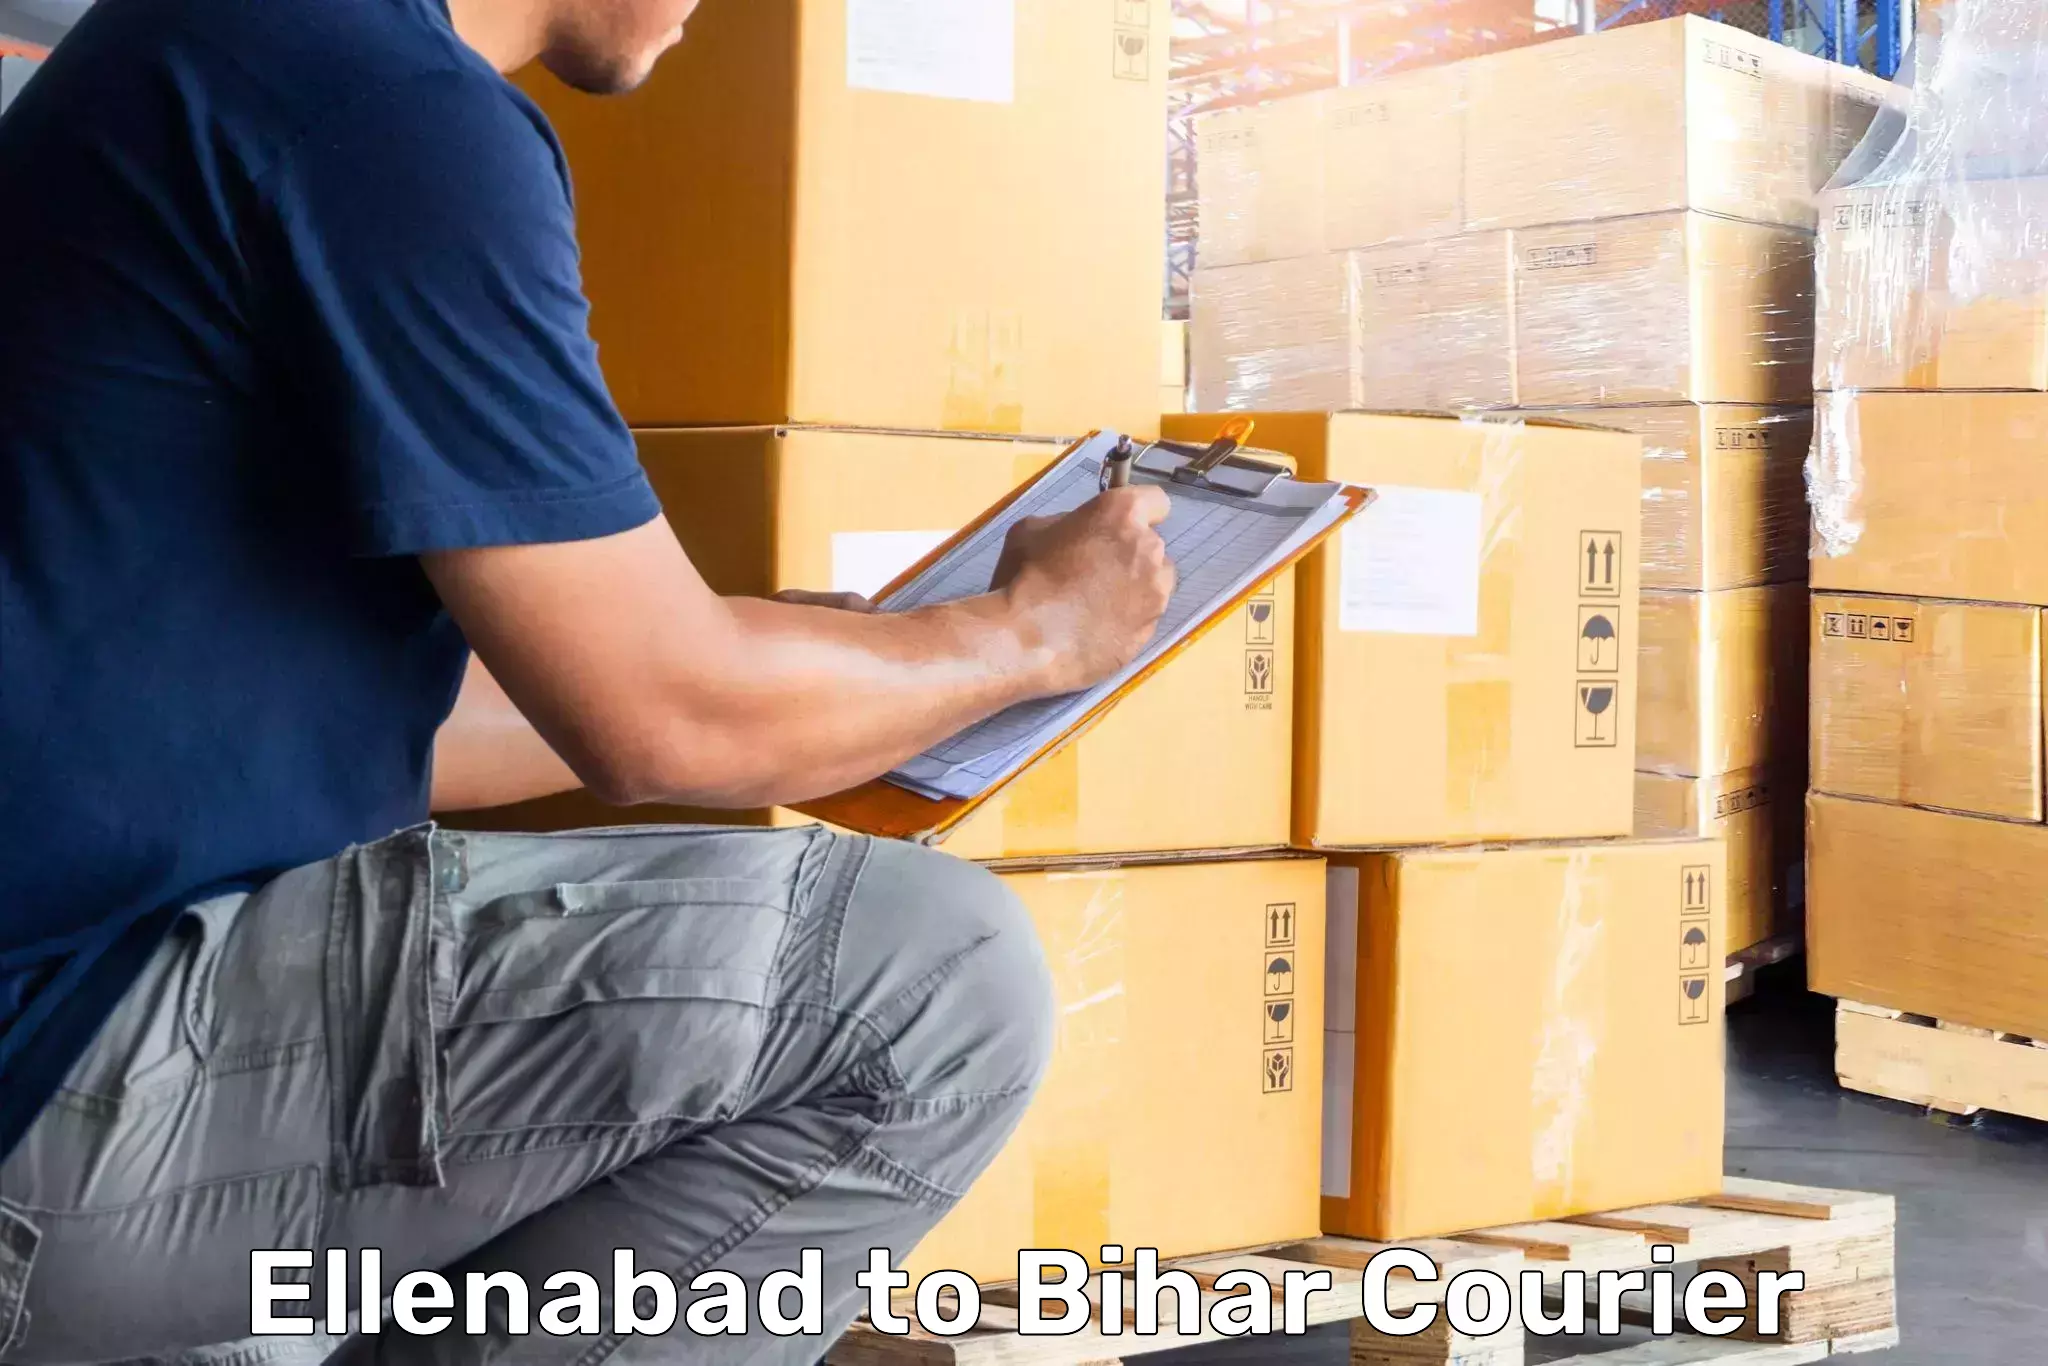 Luggage transport company Ellenabad to Mahnar Bazar